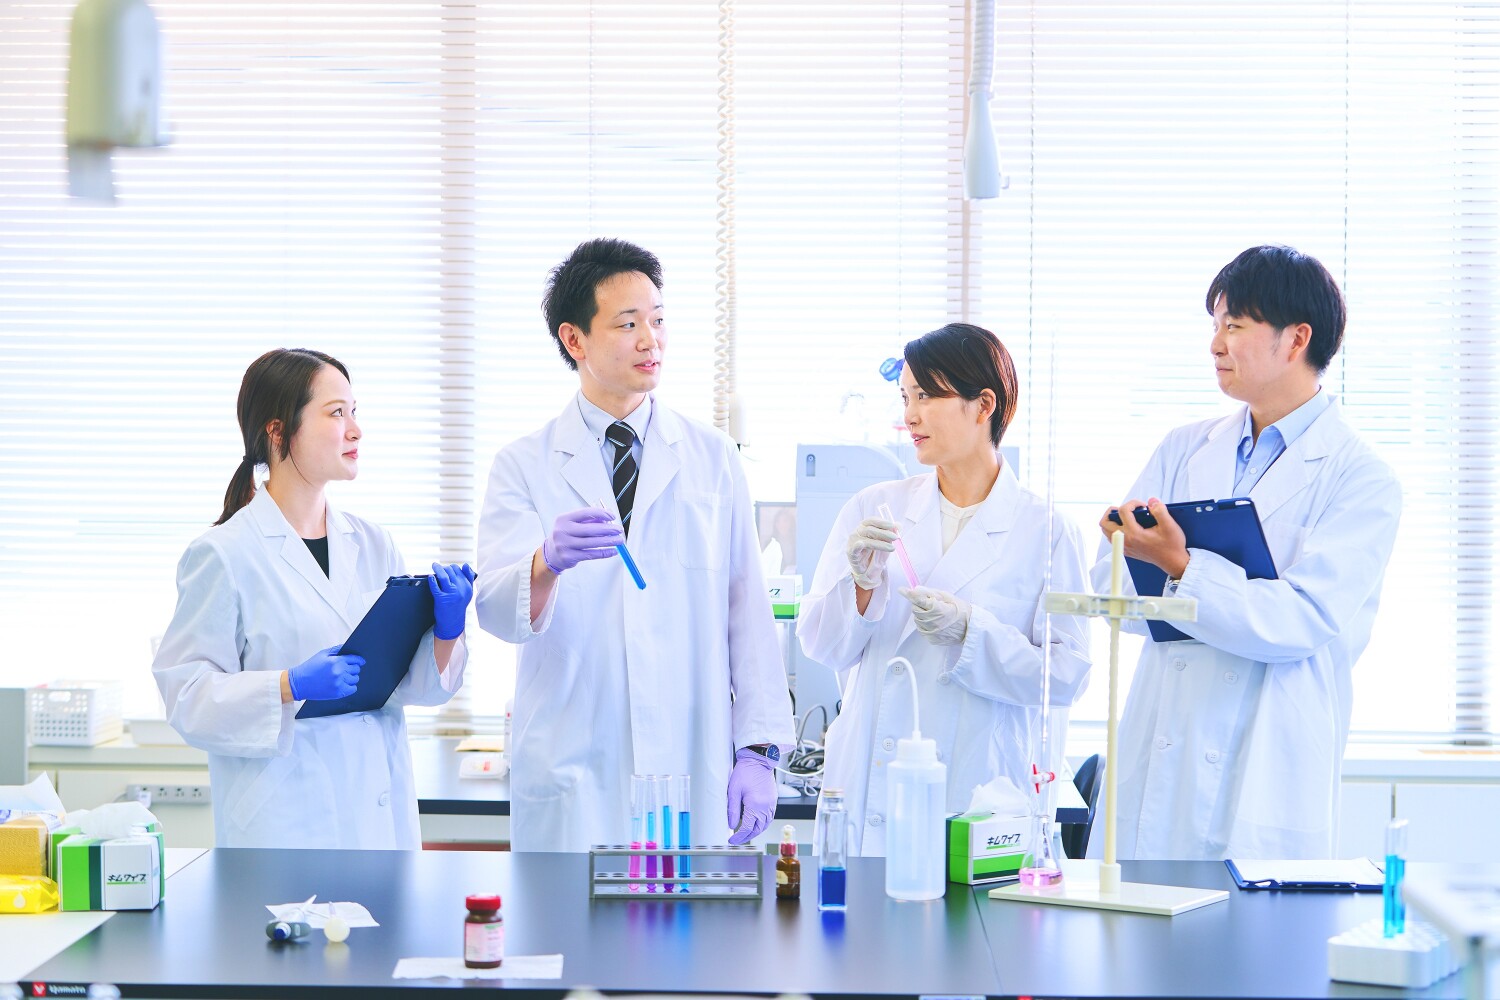 【千葉】研究所で化学分析・測定業務